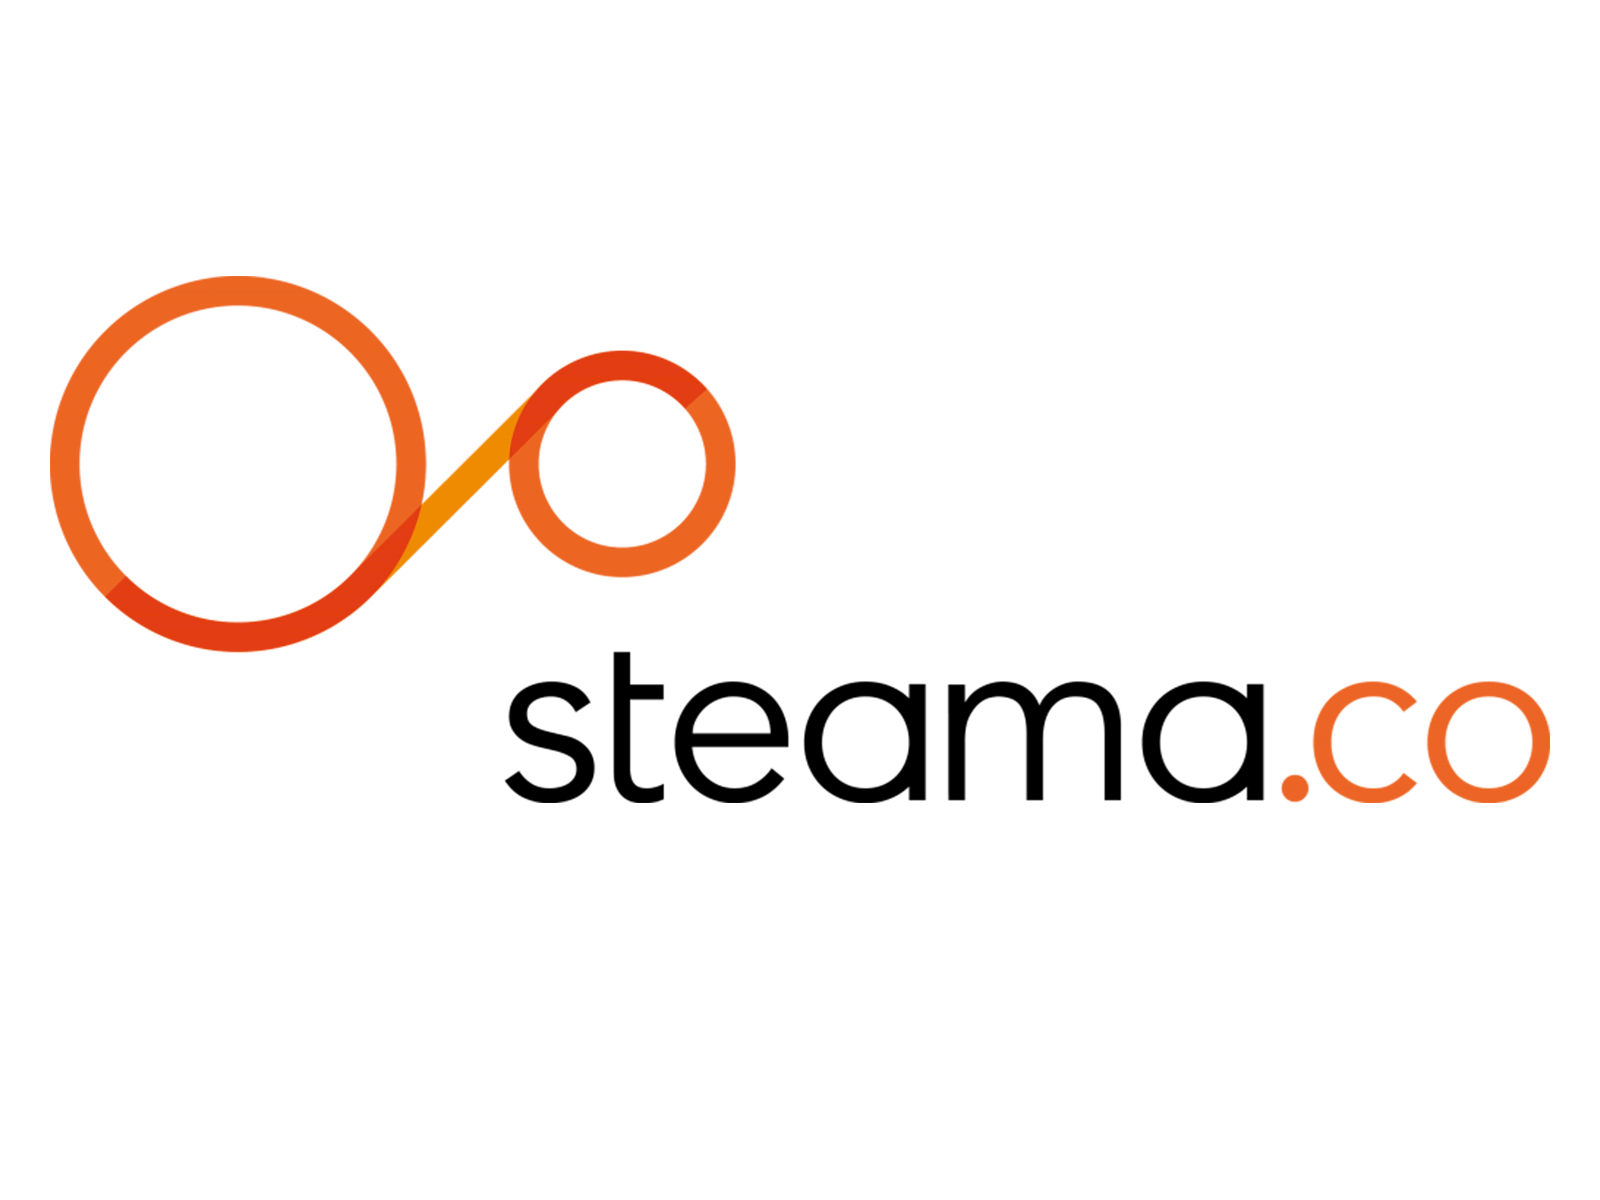 Steamaco logo